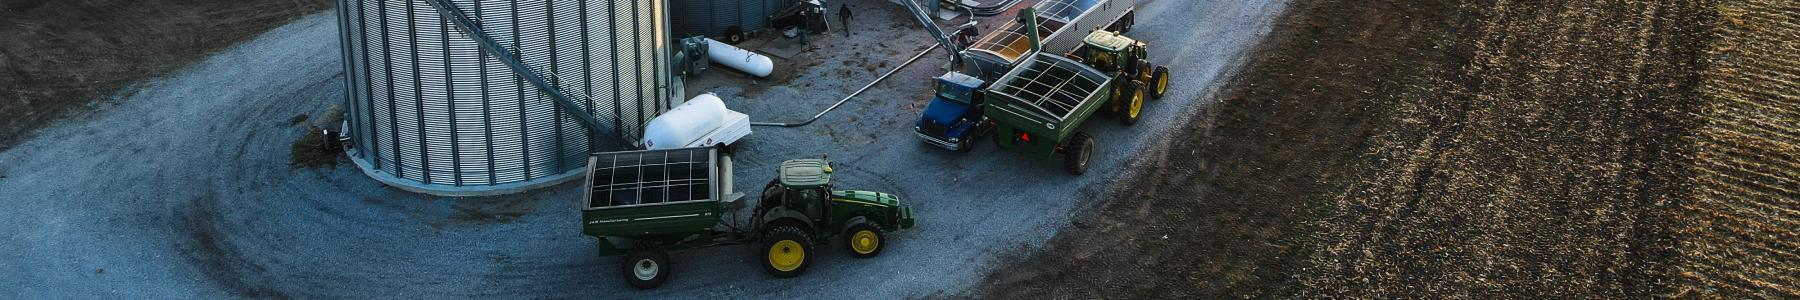 Farm aerial photo